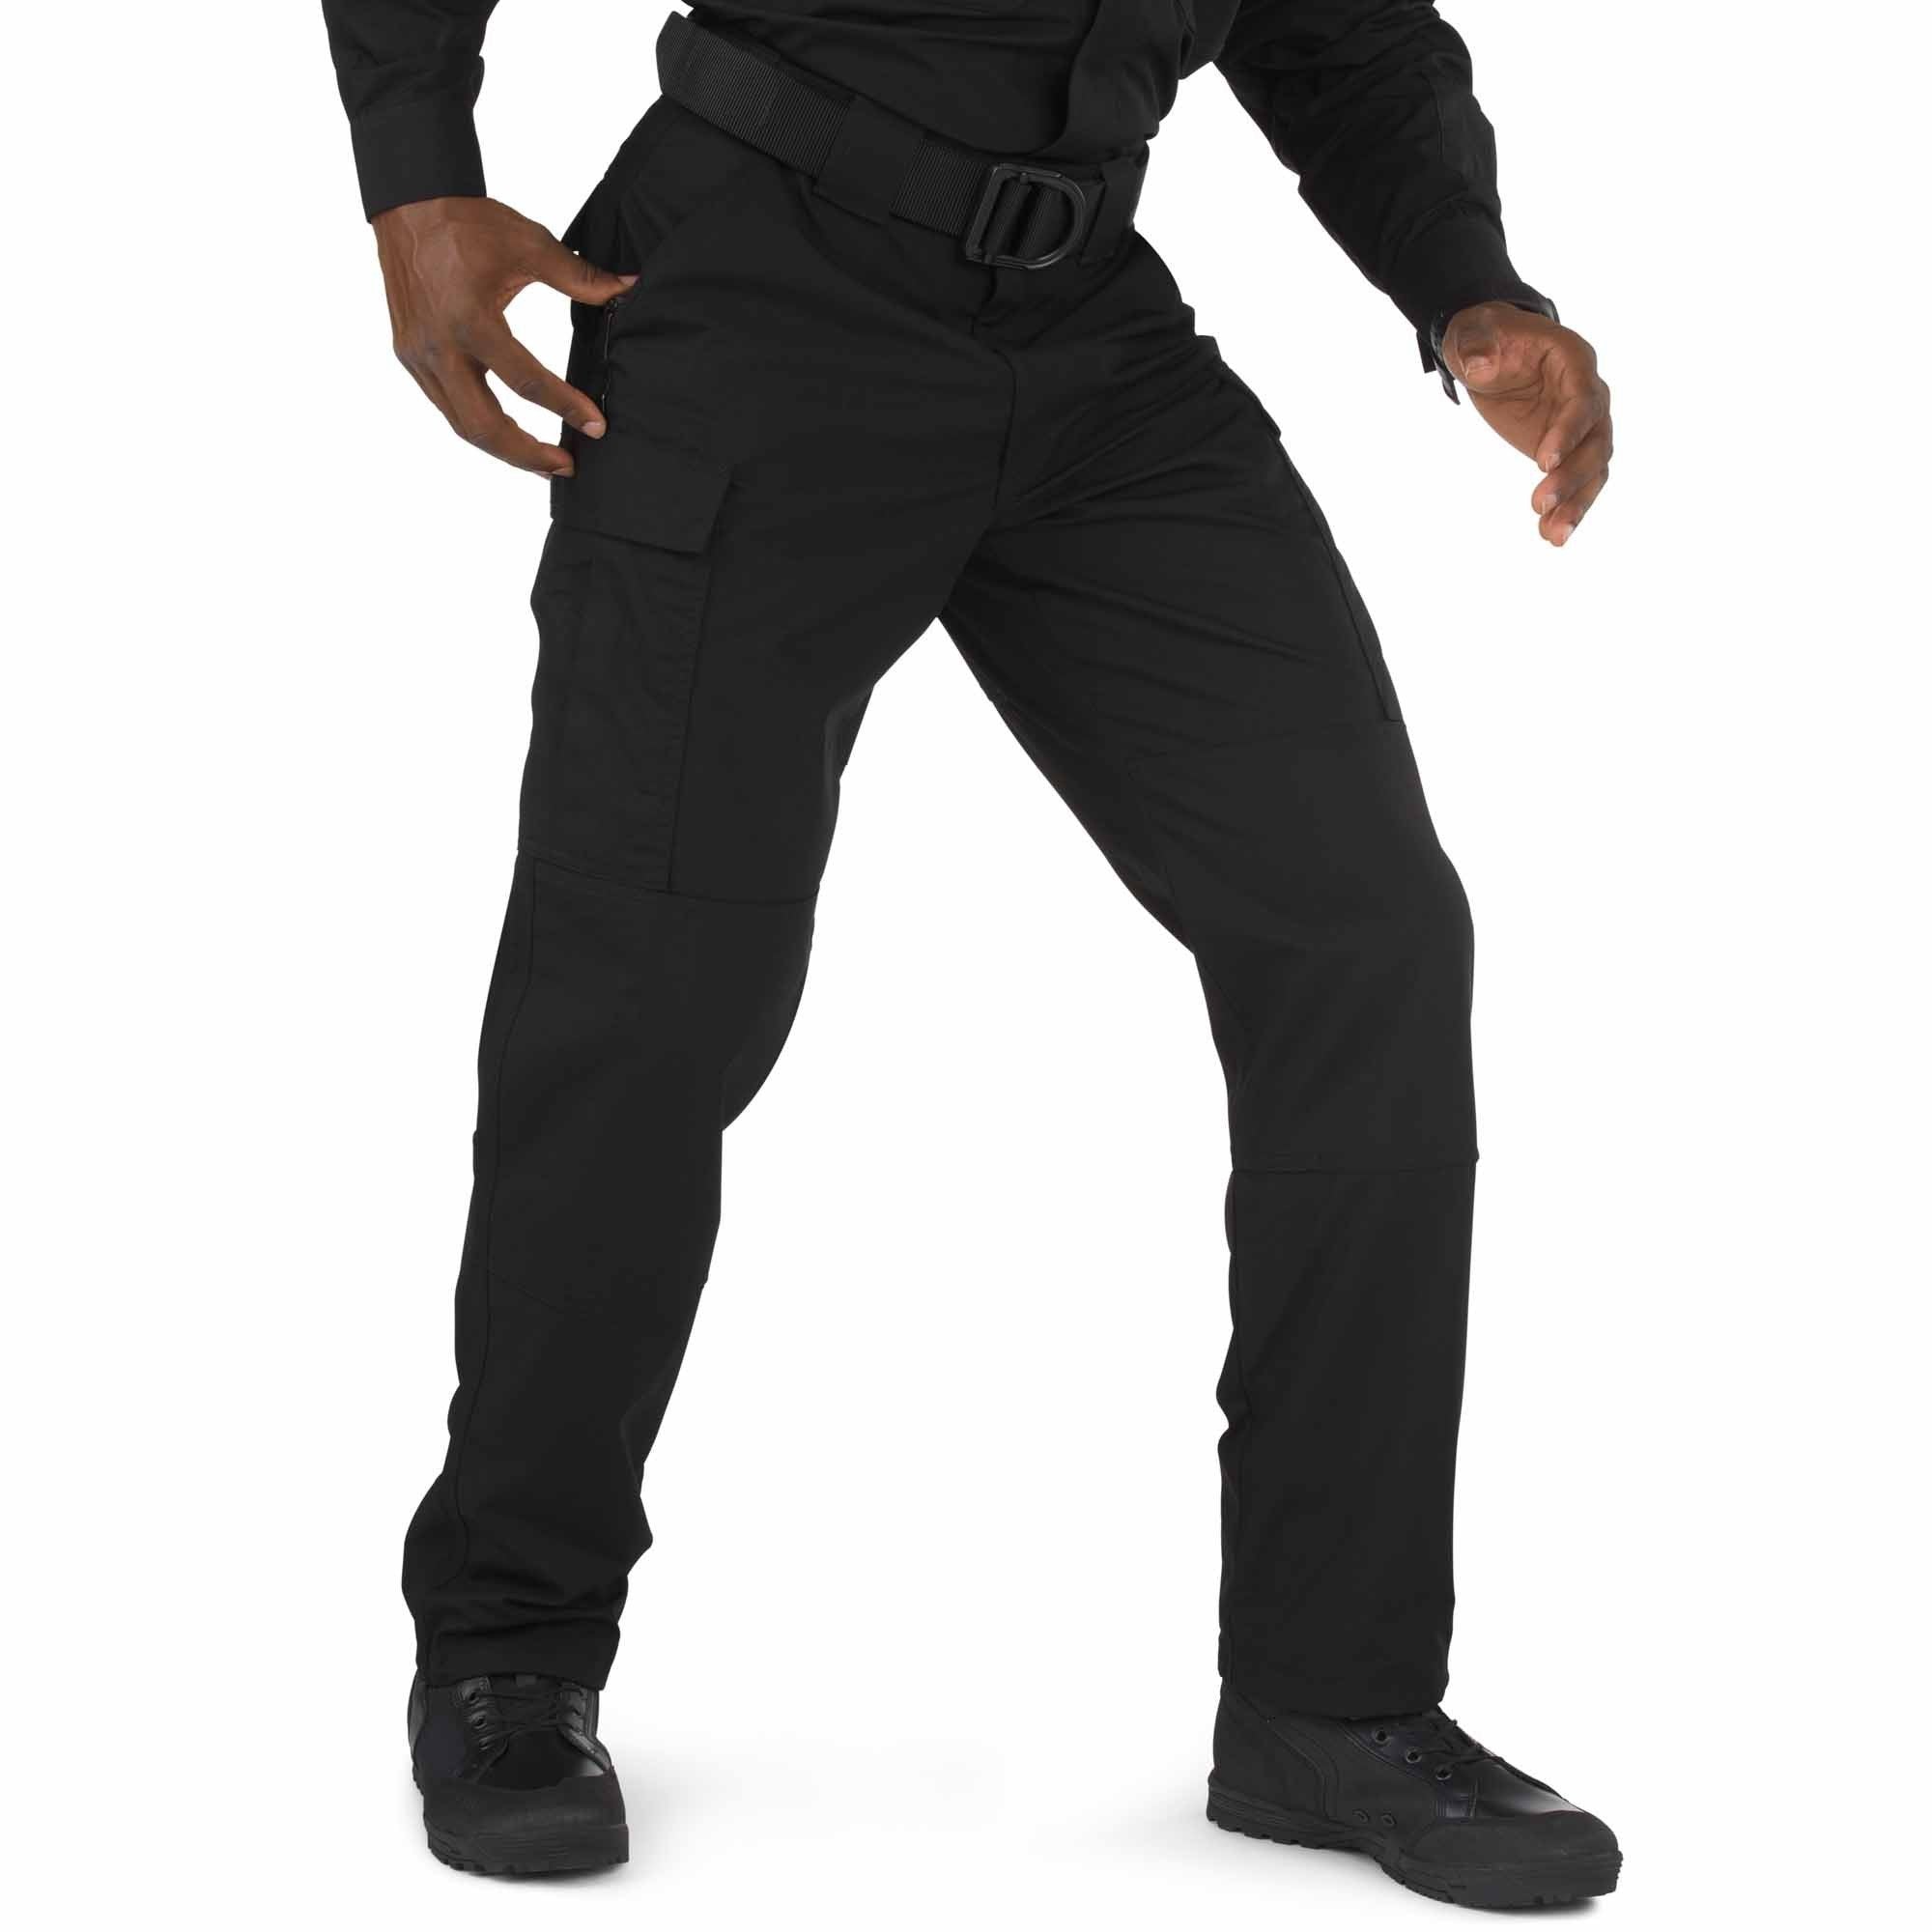 5.11 Tactical TDU Pants Pants 5.11 Tactical Black Extra Small • Short Tactical Gear Supplier Tactical Distributors Australia